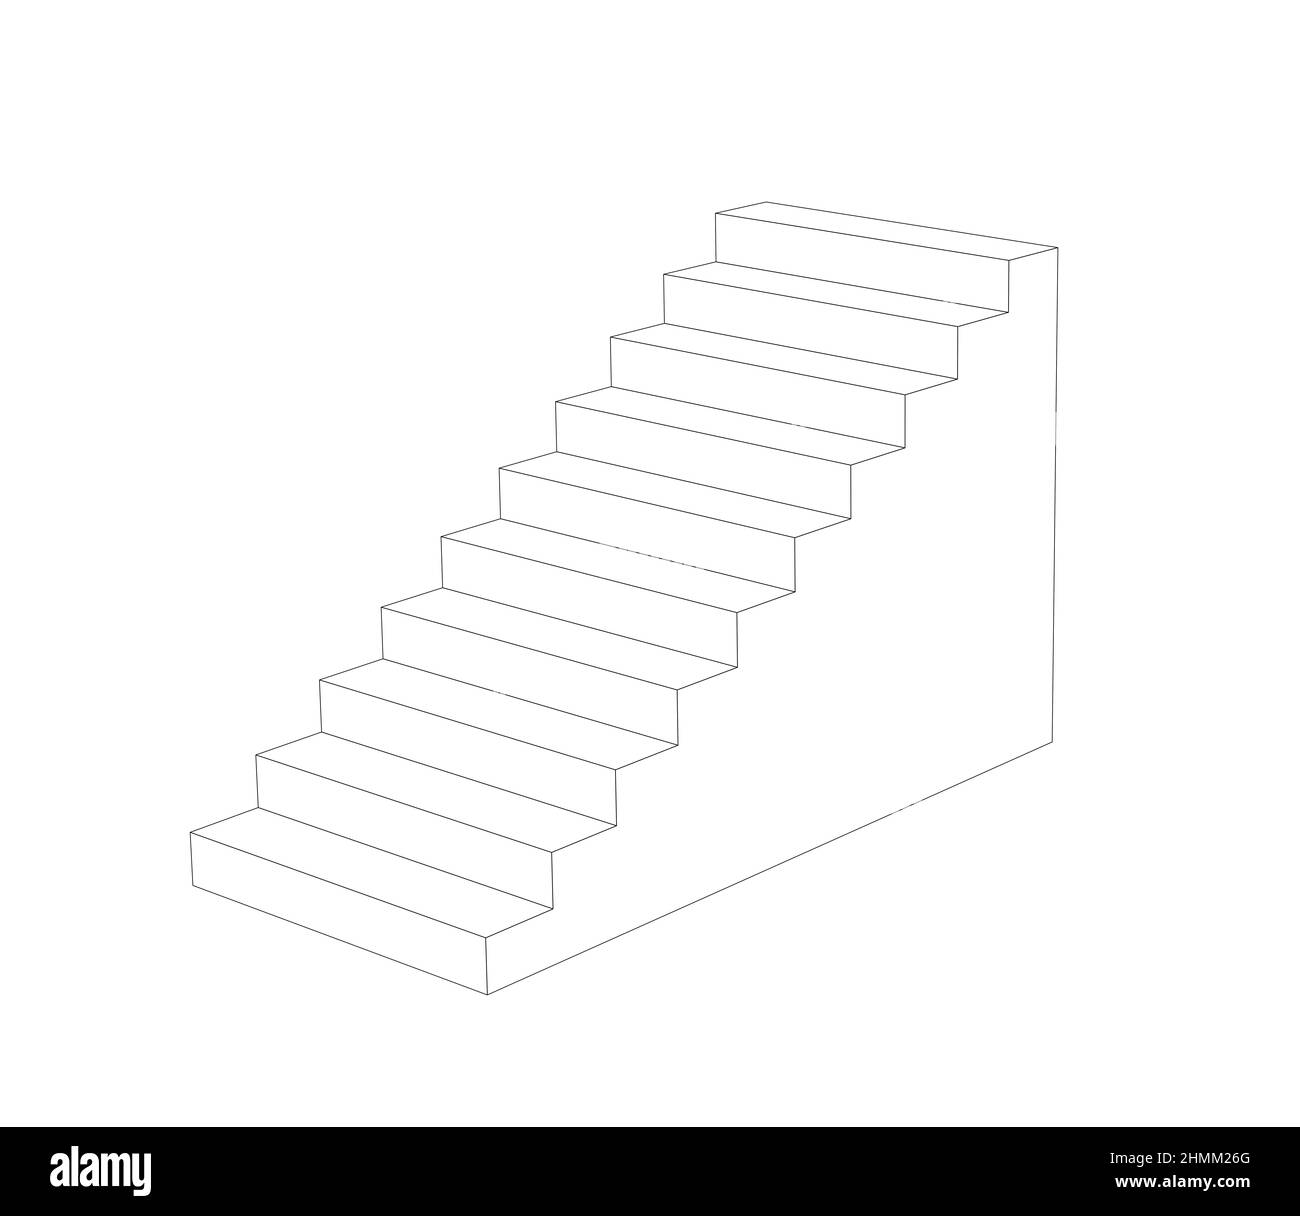 schéma de perspective d'escalier simple. illustration noire 3d Banque D'Images